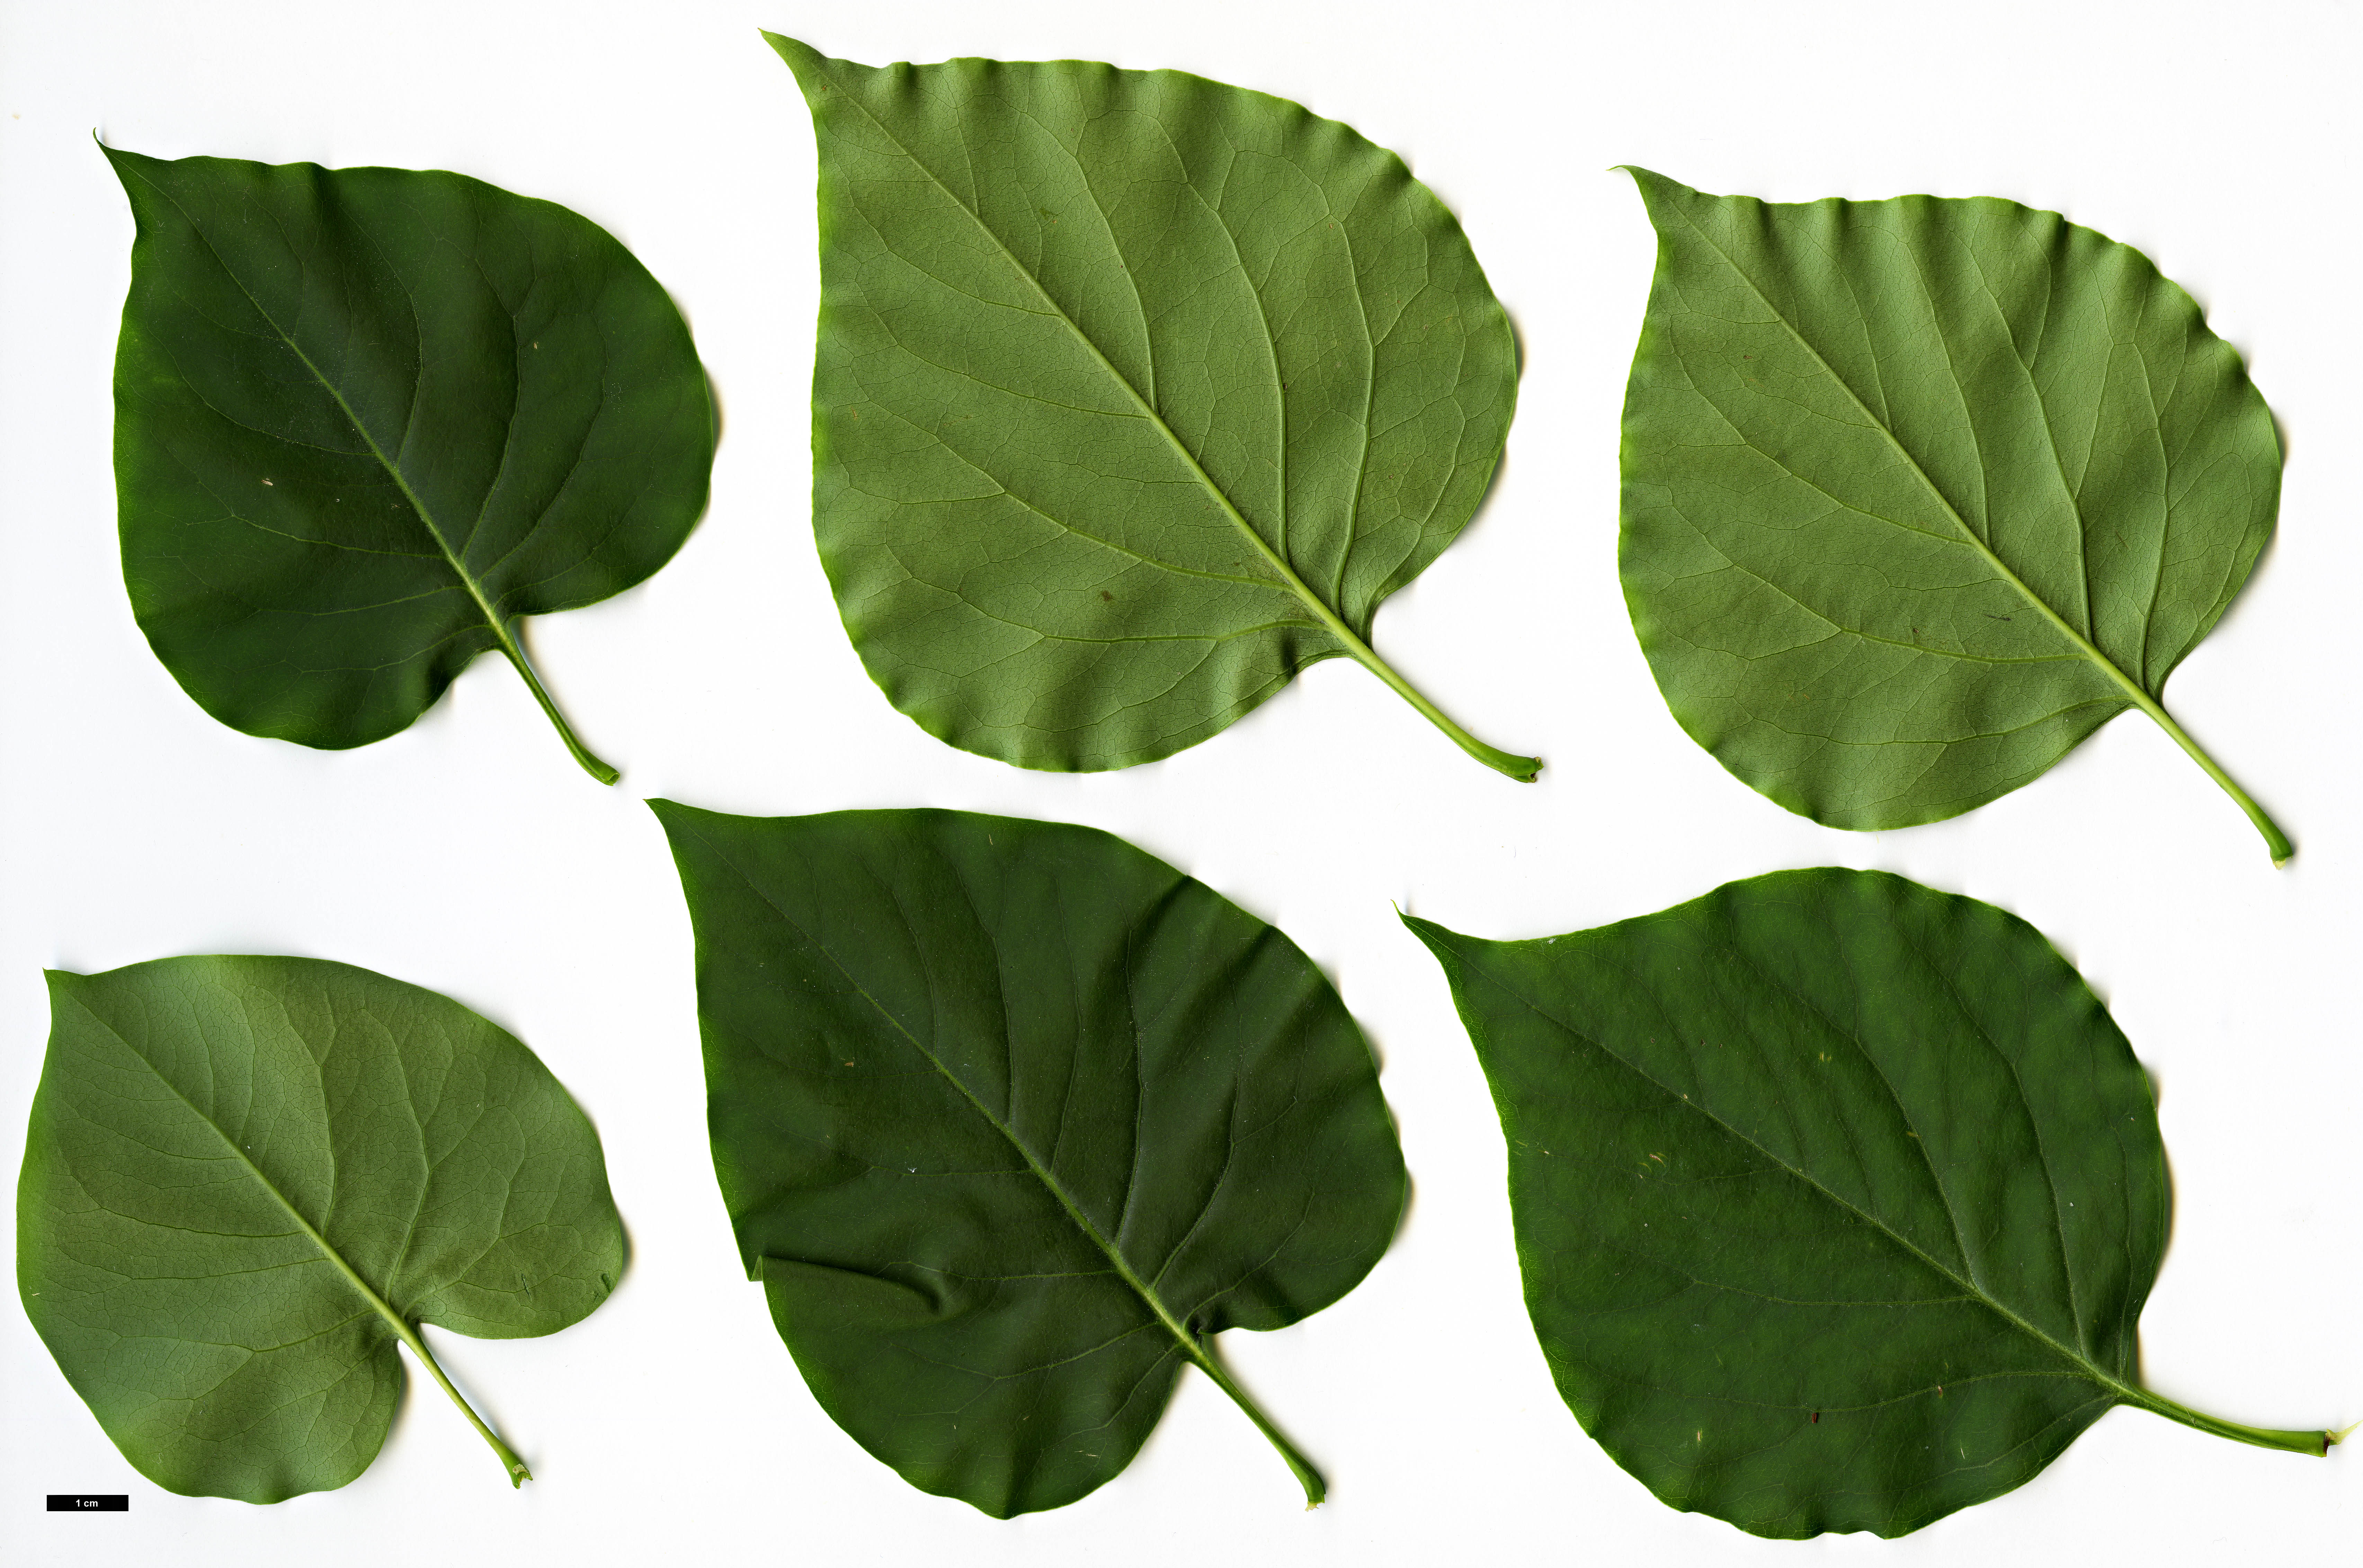 High resolution image: Family: Oleaceae - Genus: Syringa - Taxon: oblata - SpeciesSub: var. dilatata